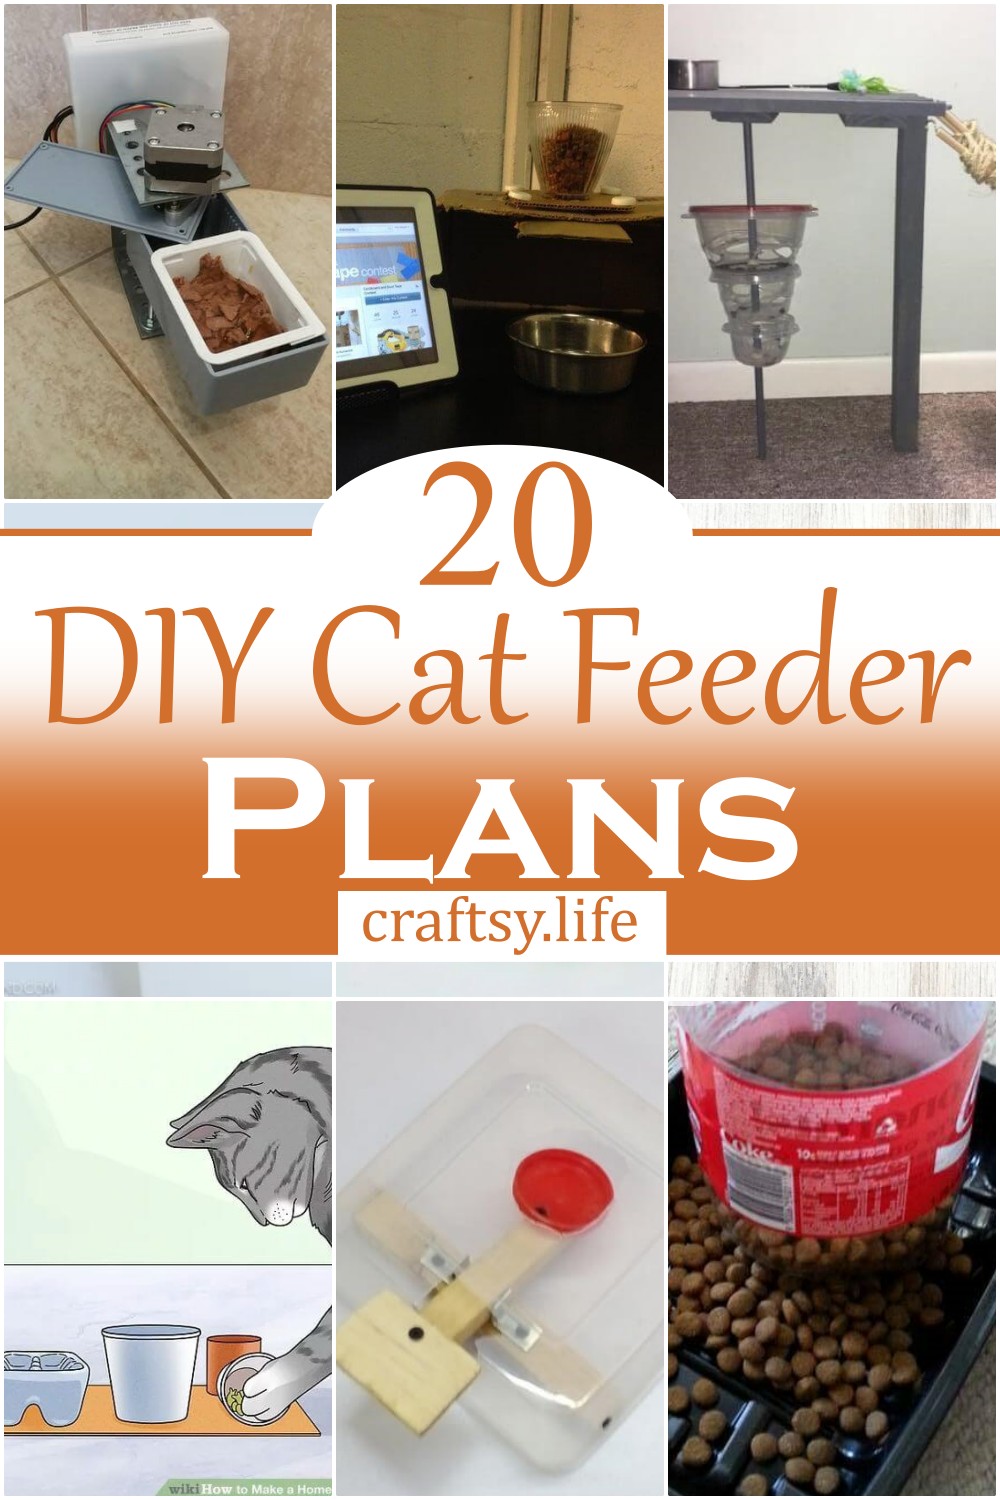 DIY Cat Feeder Plans